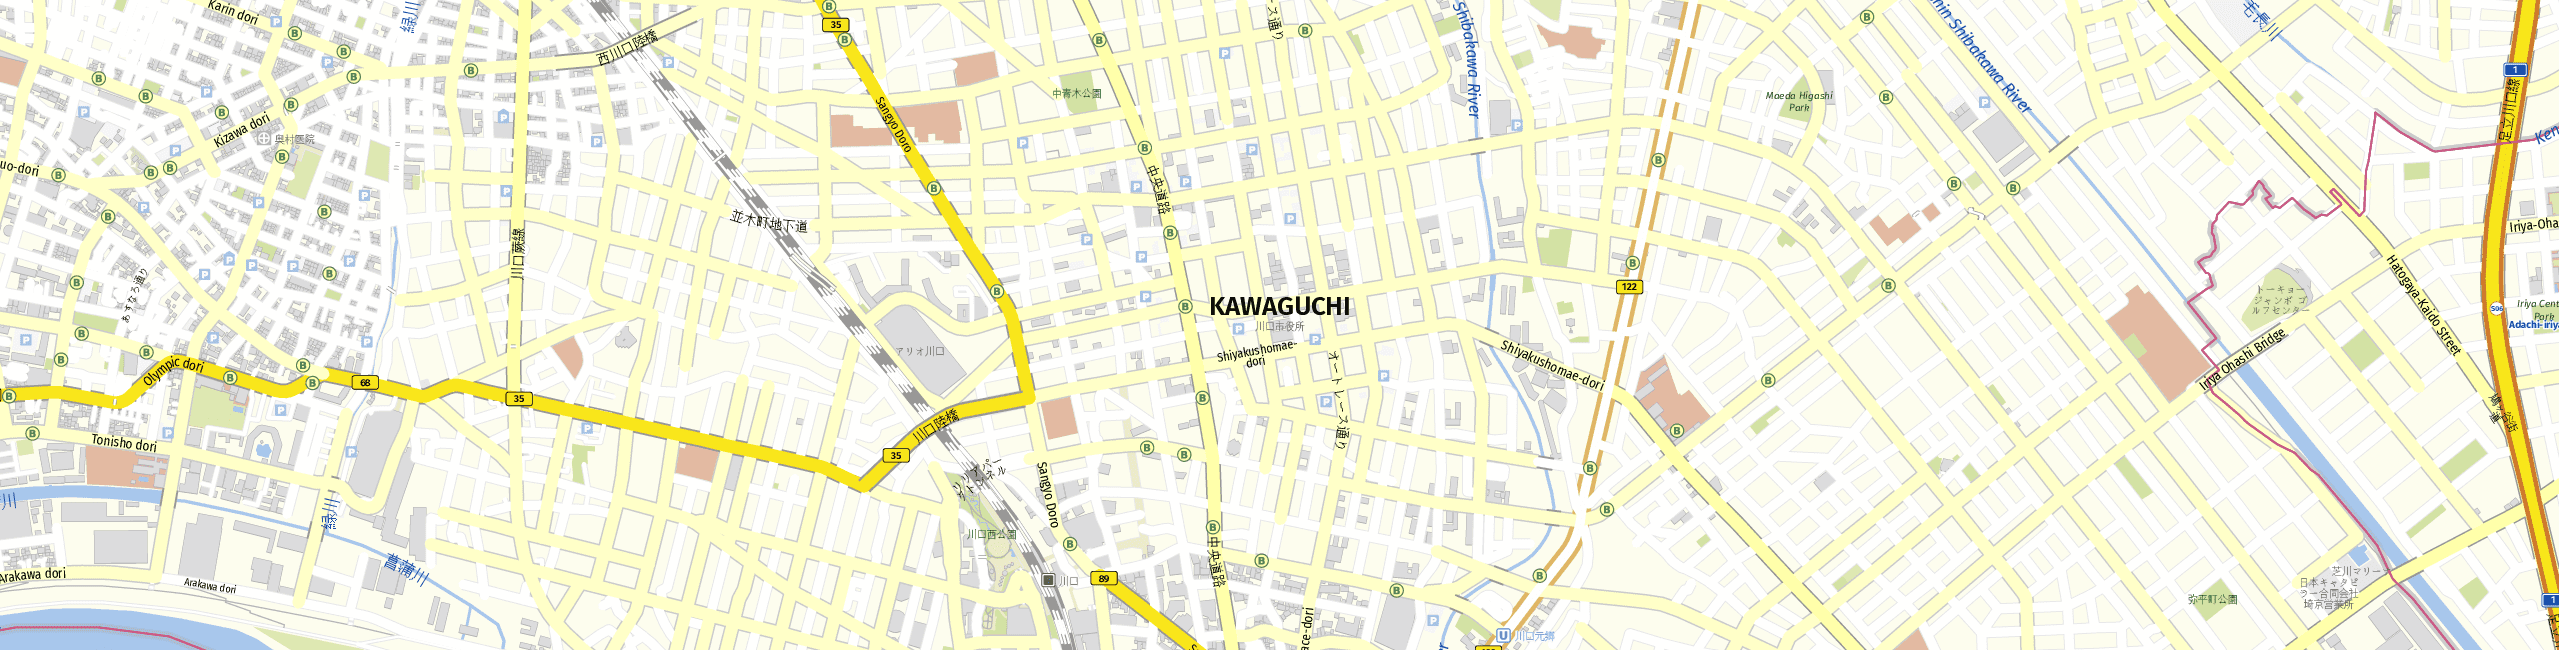 Stadtplan Kawaguchi zum Downloaden.